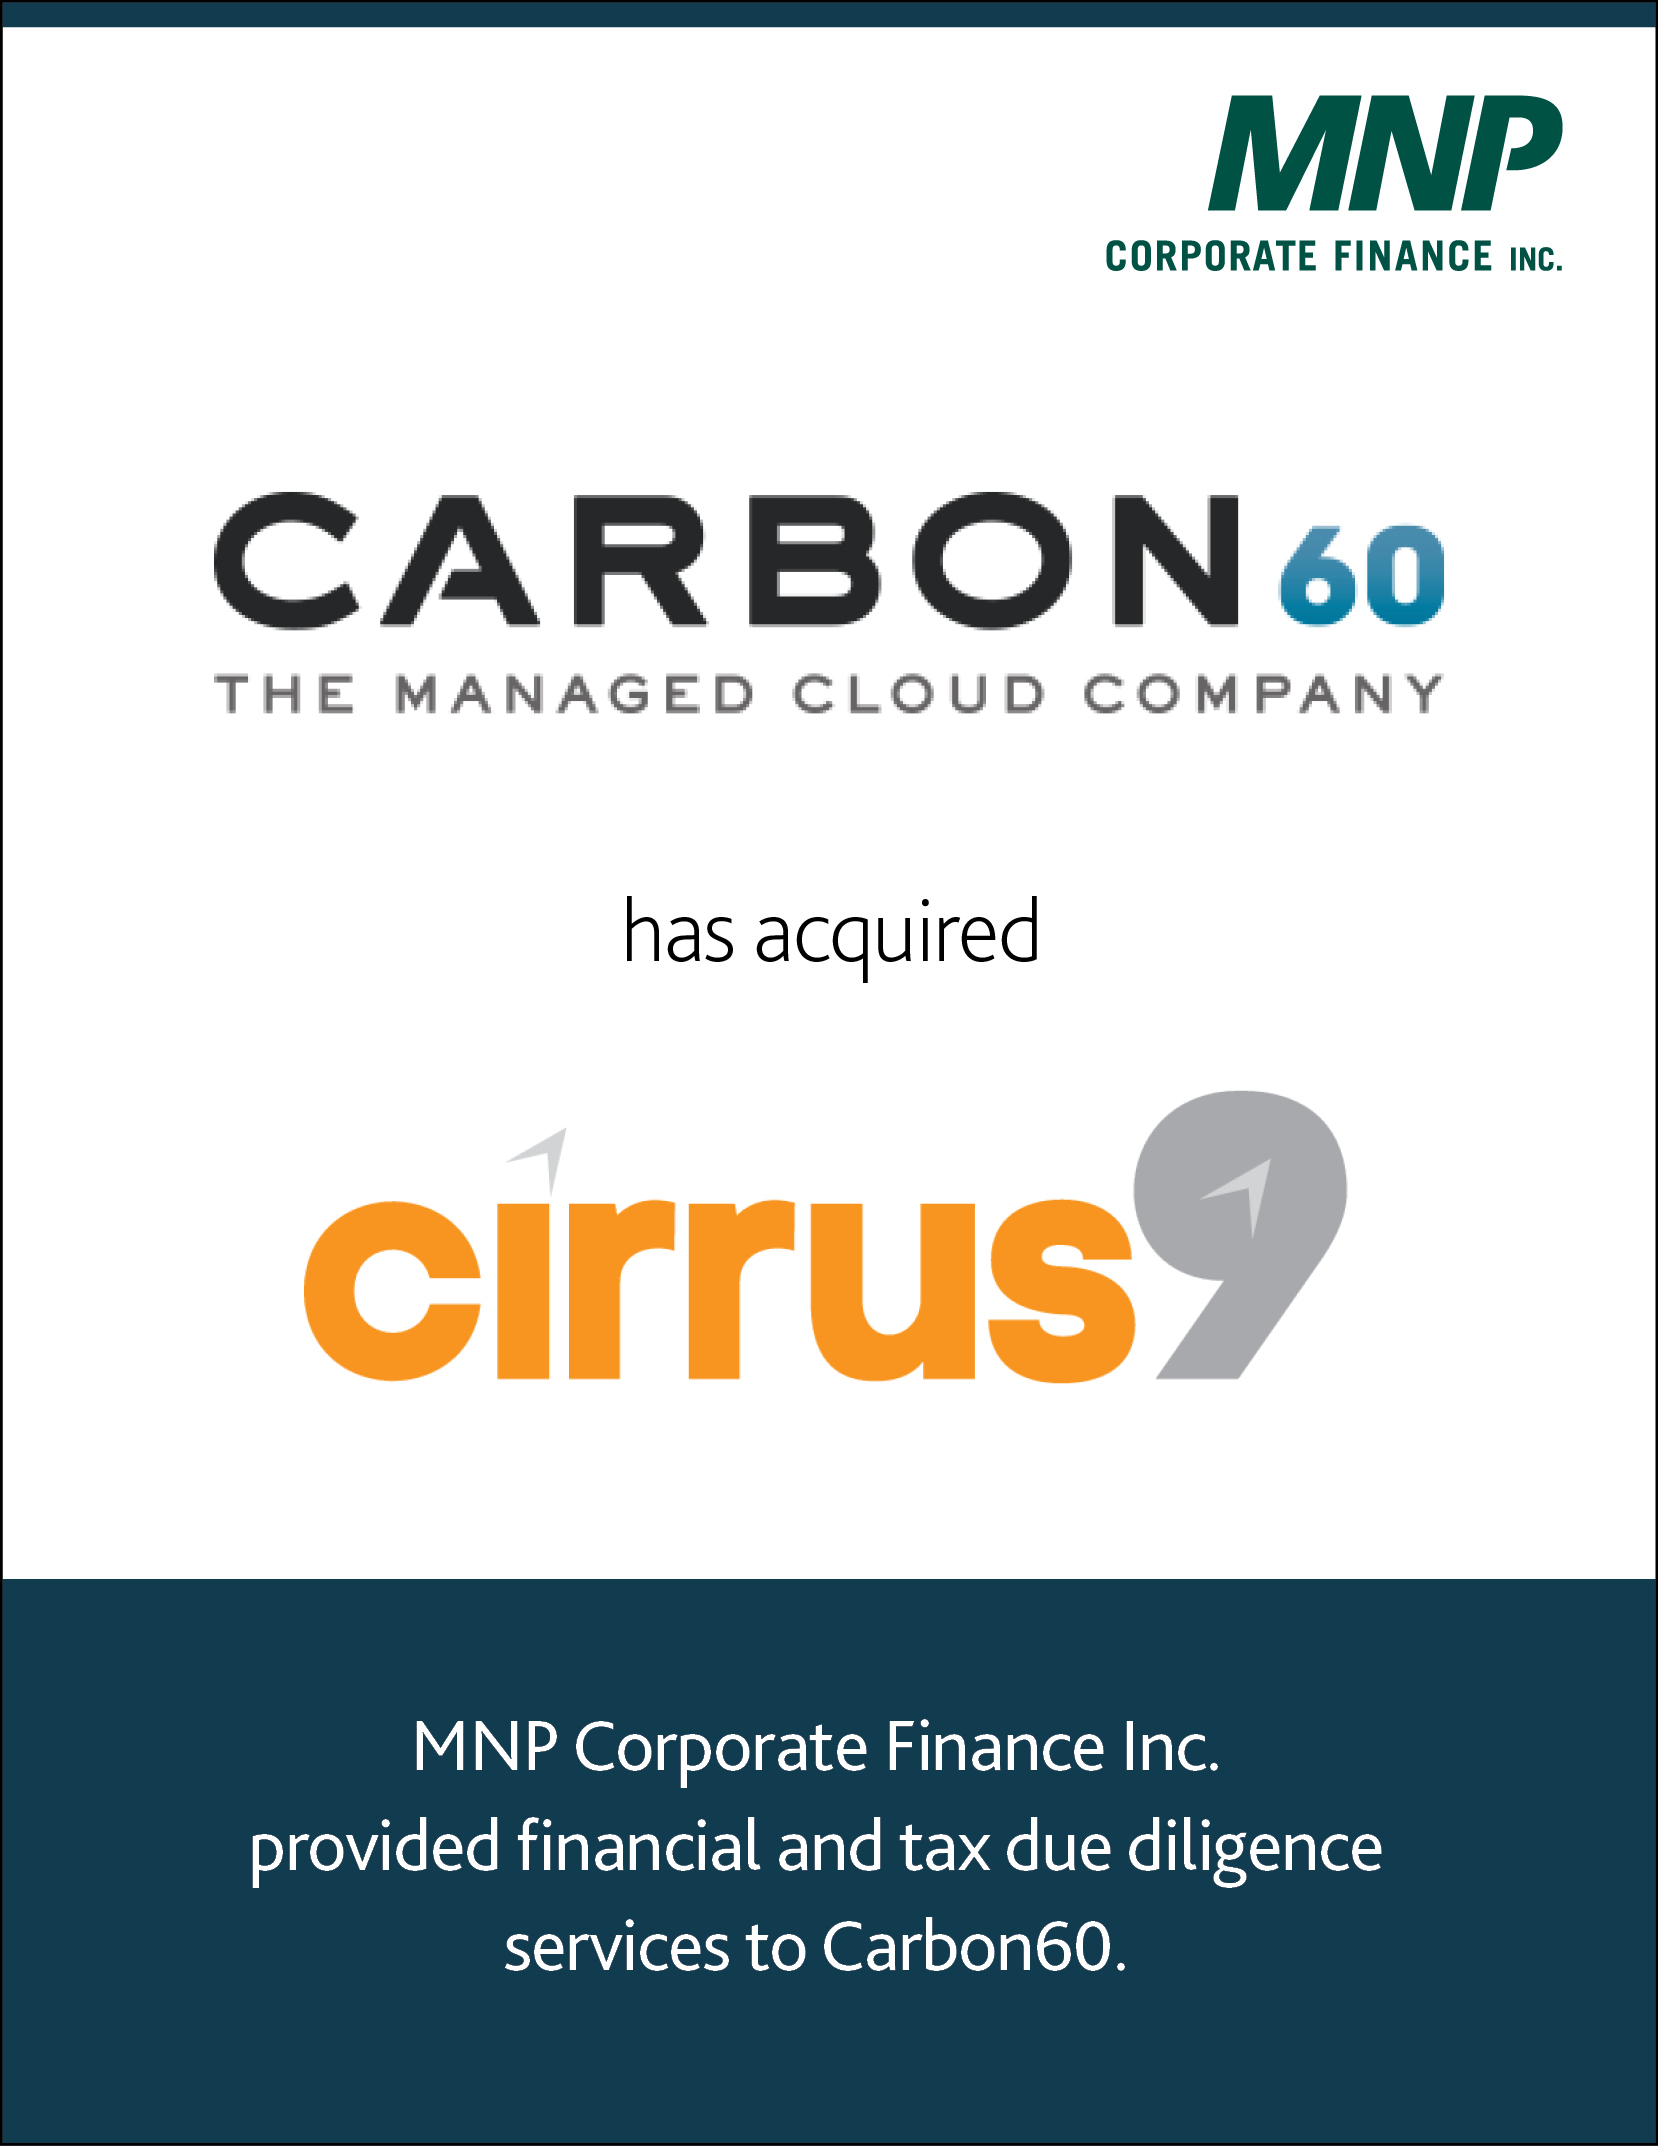 Carbon 60 has Acquired Cirrus9